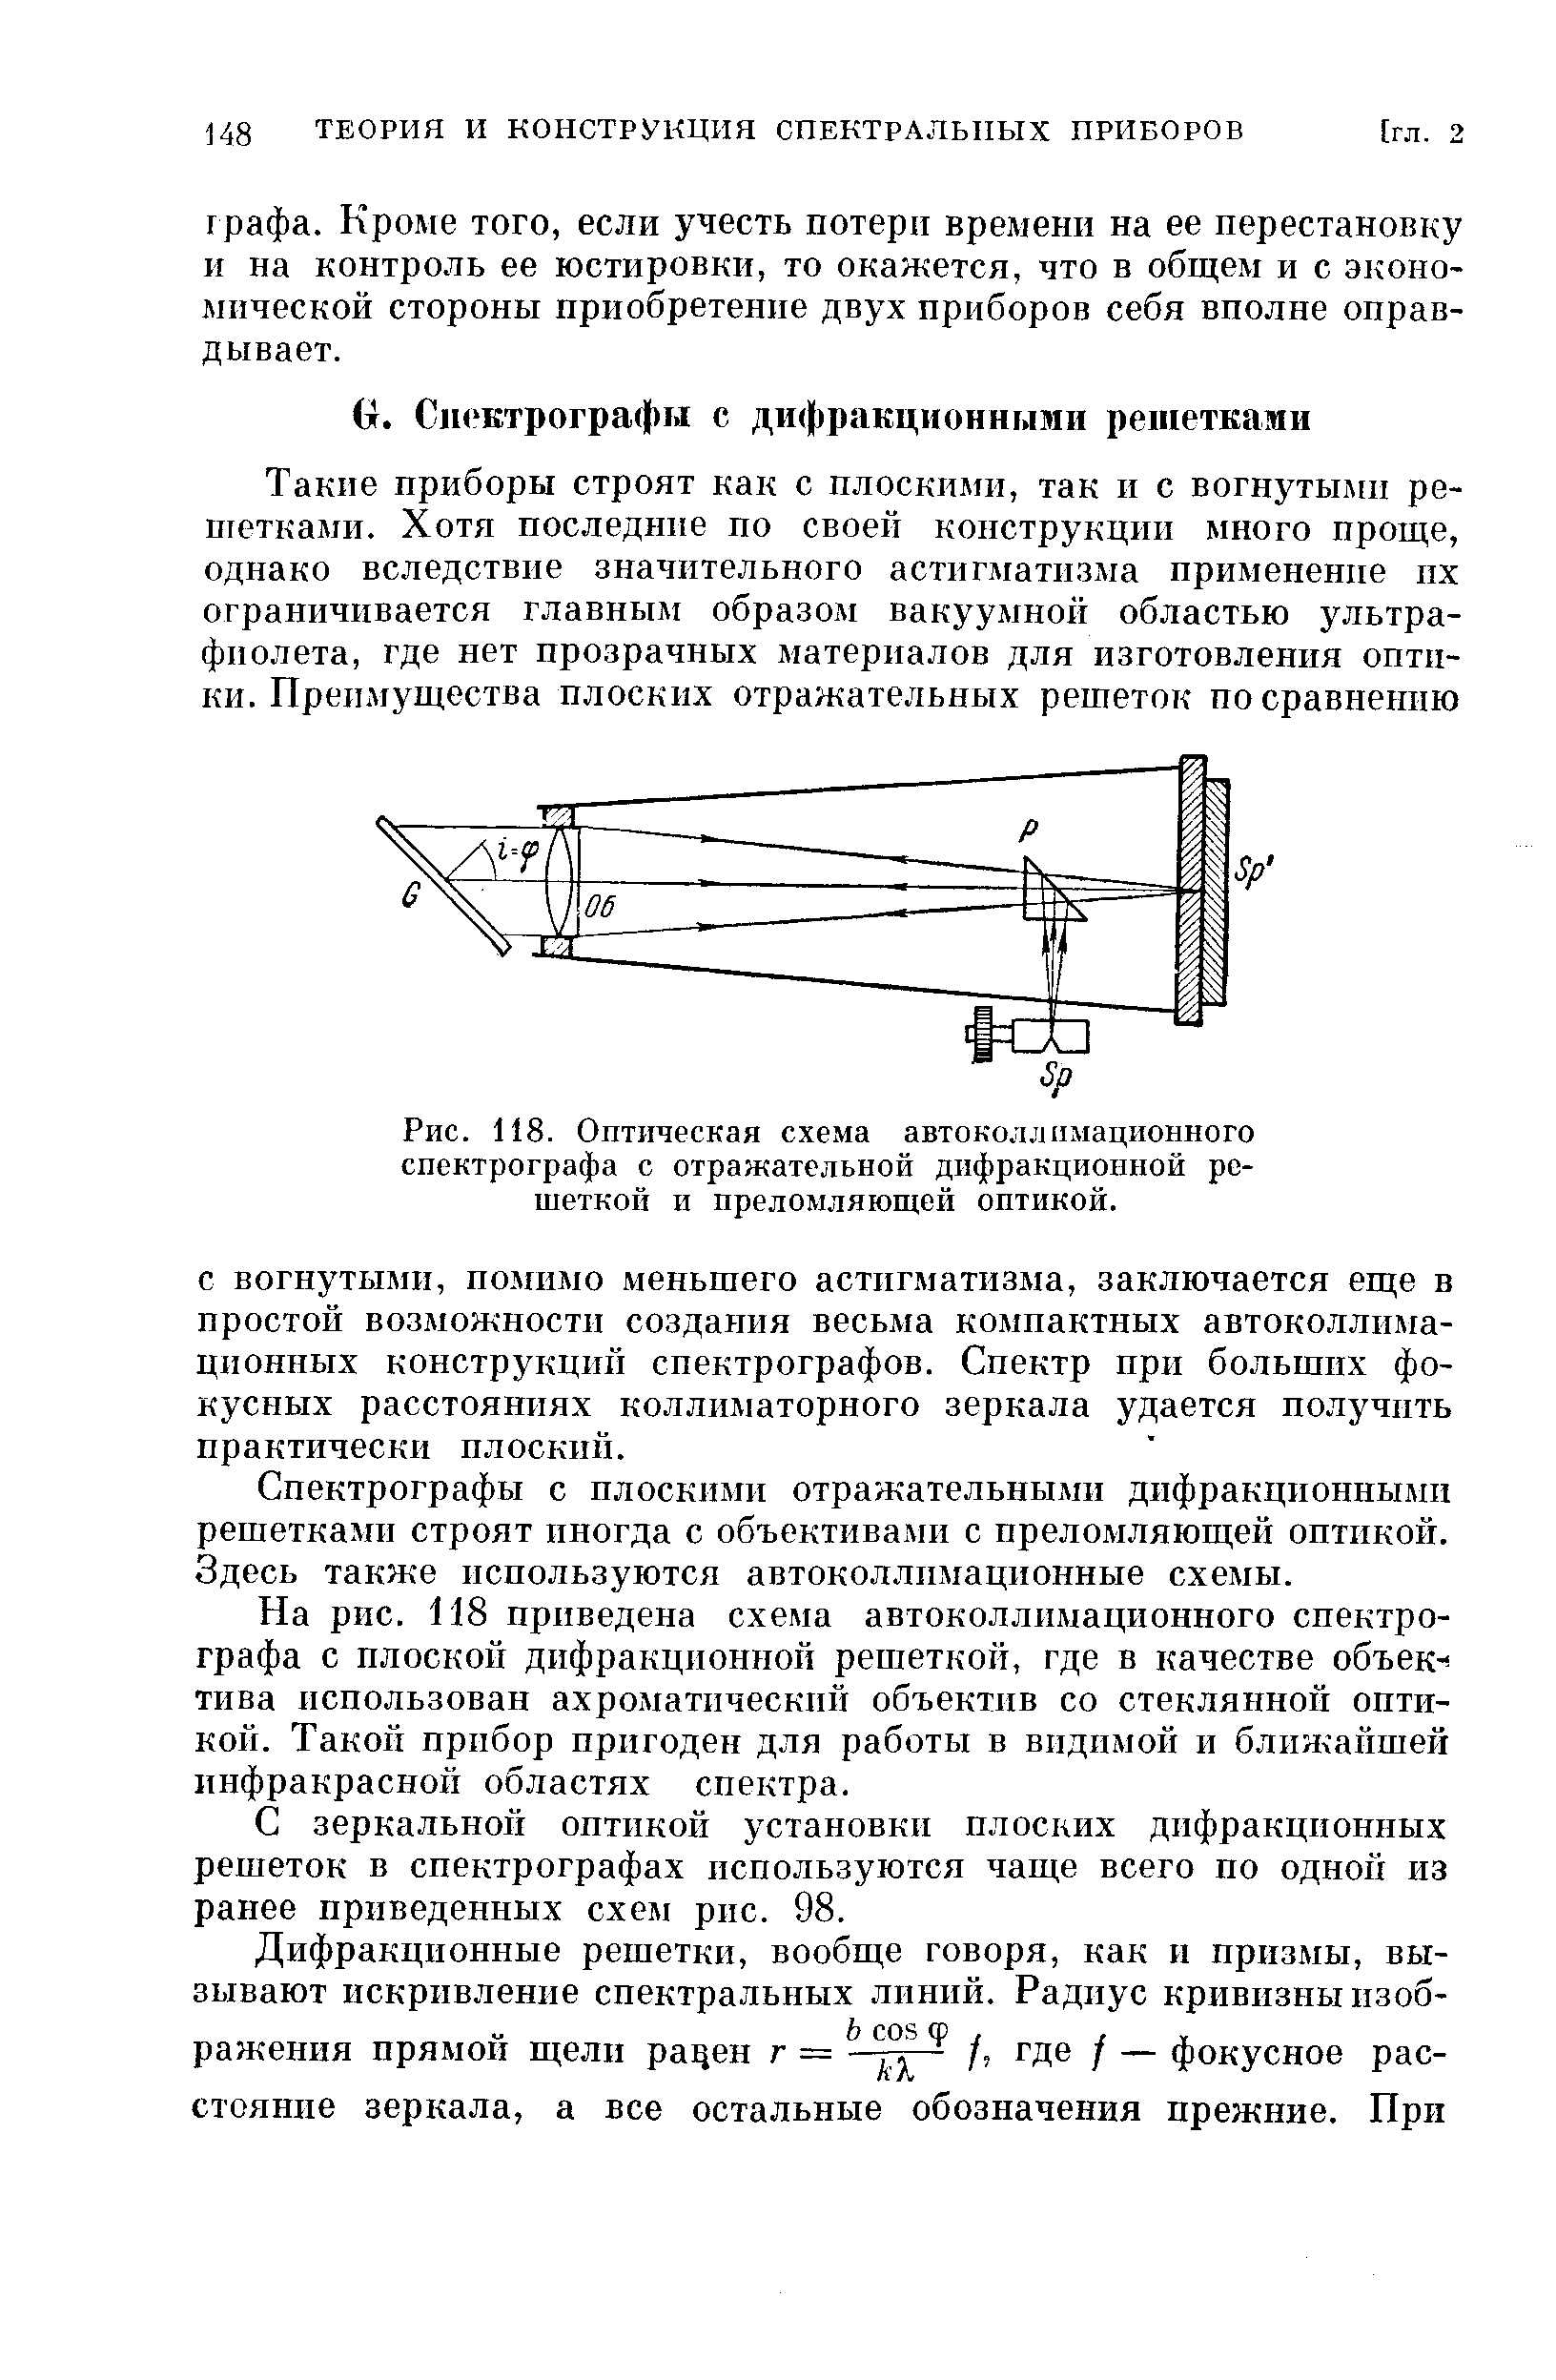 Рис. 118. Оптическая схема автоколлимационного спектрографа с отражательной дифракциопной решеткой и преломляющей оптикой.
